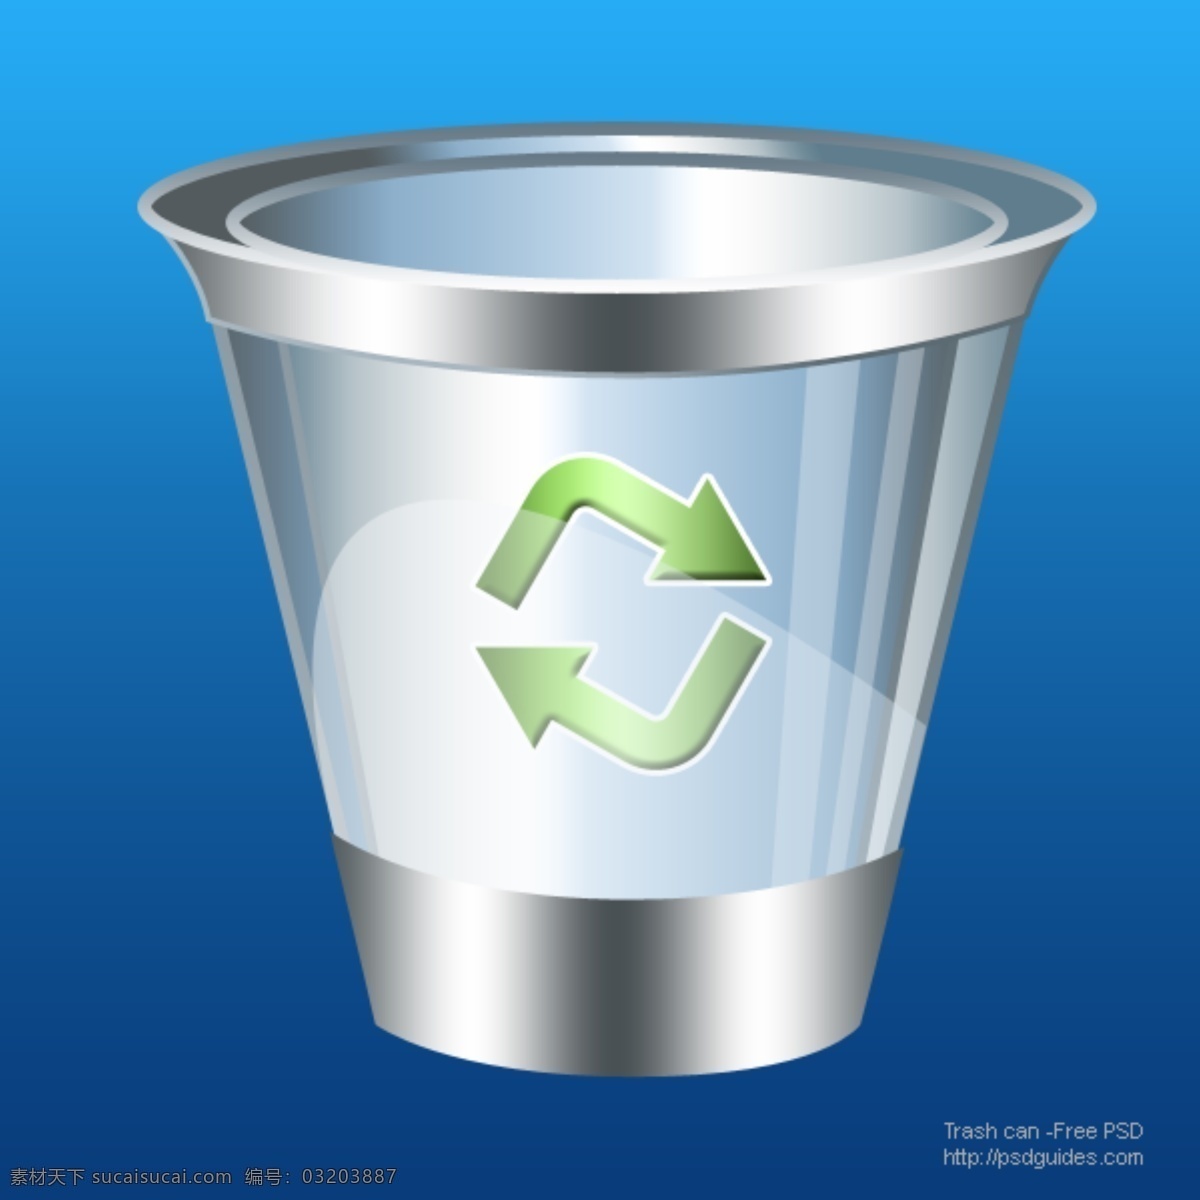 ui 垃圾 回收站 图标 web 创意 高分辨率 回收站图标 接口 免费 清洁 时尚的 现代的 独特的 原始的 质量 新鲜的 设计新的 hd 元素 用户界面 ui元素 详细的 废物箱 垃圾桶 循环 仓 psd源文件